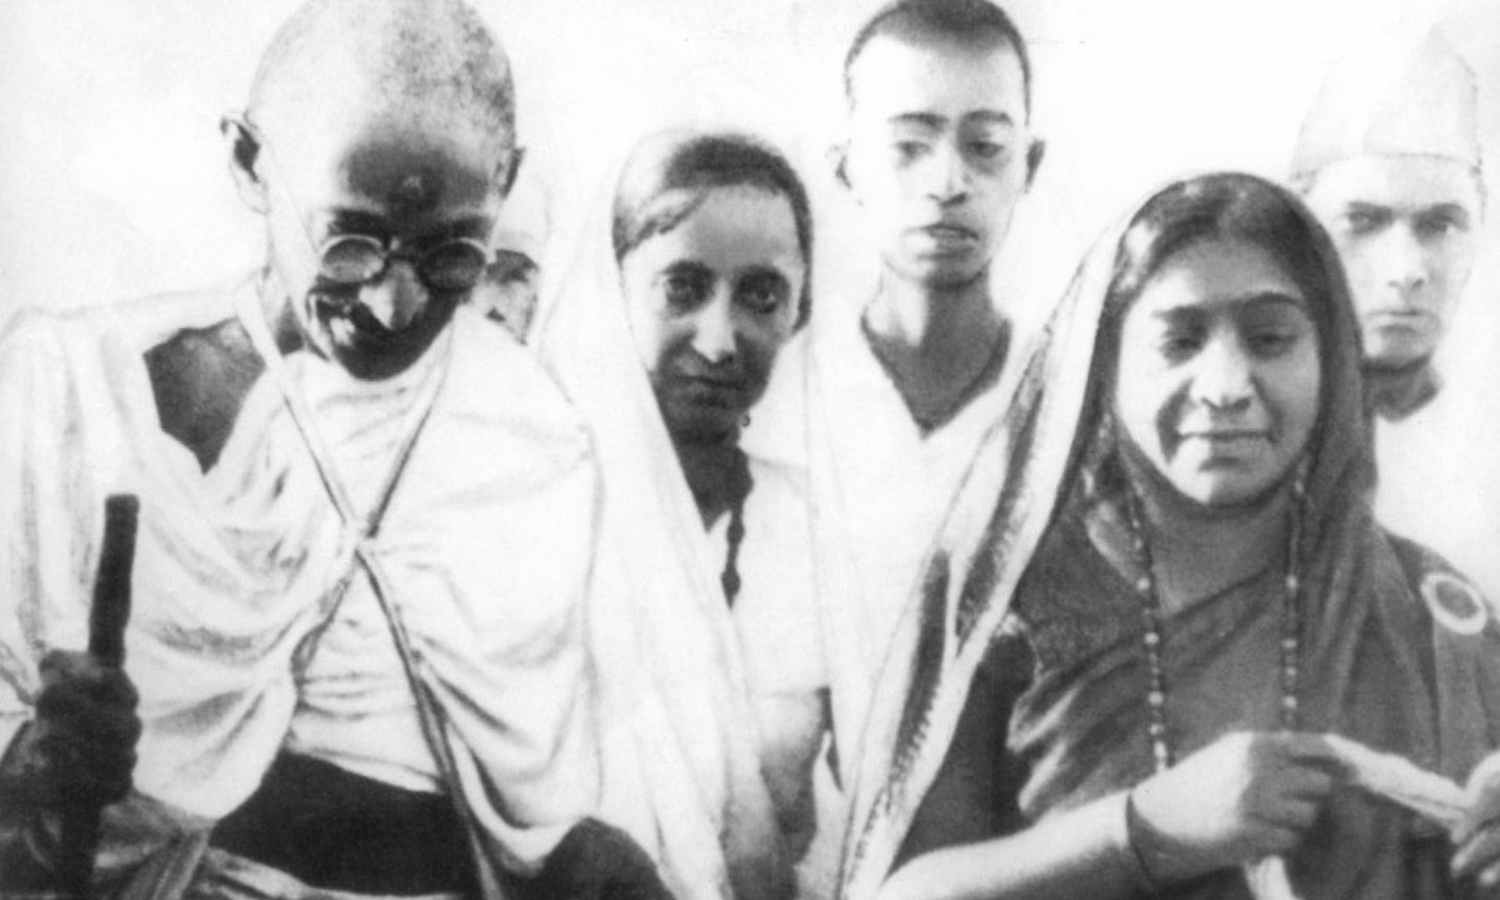 Las frases más curiosas de Gandhi en el día de su nacimiento